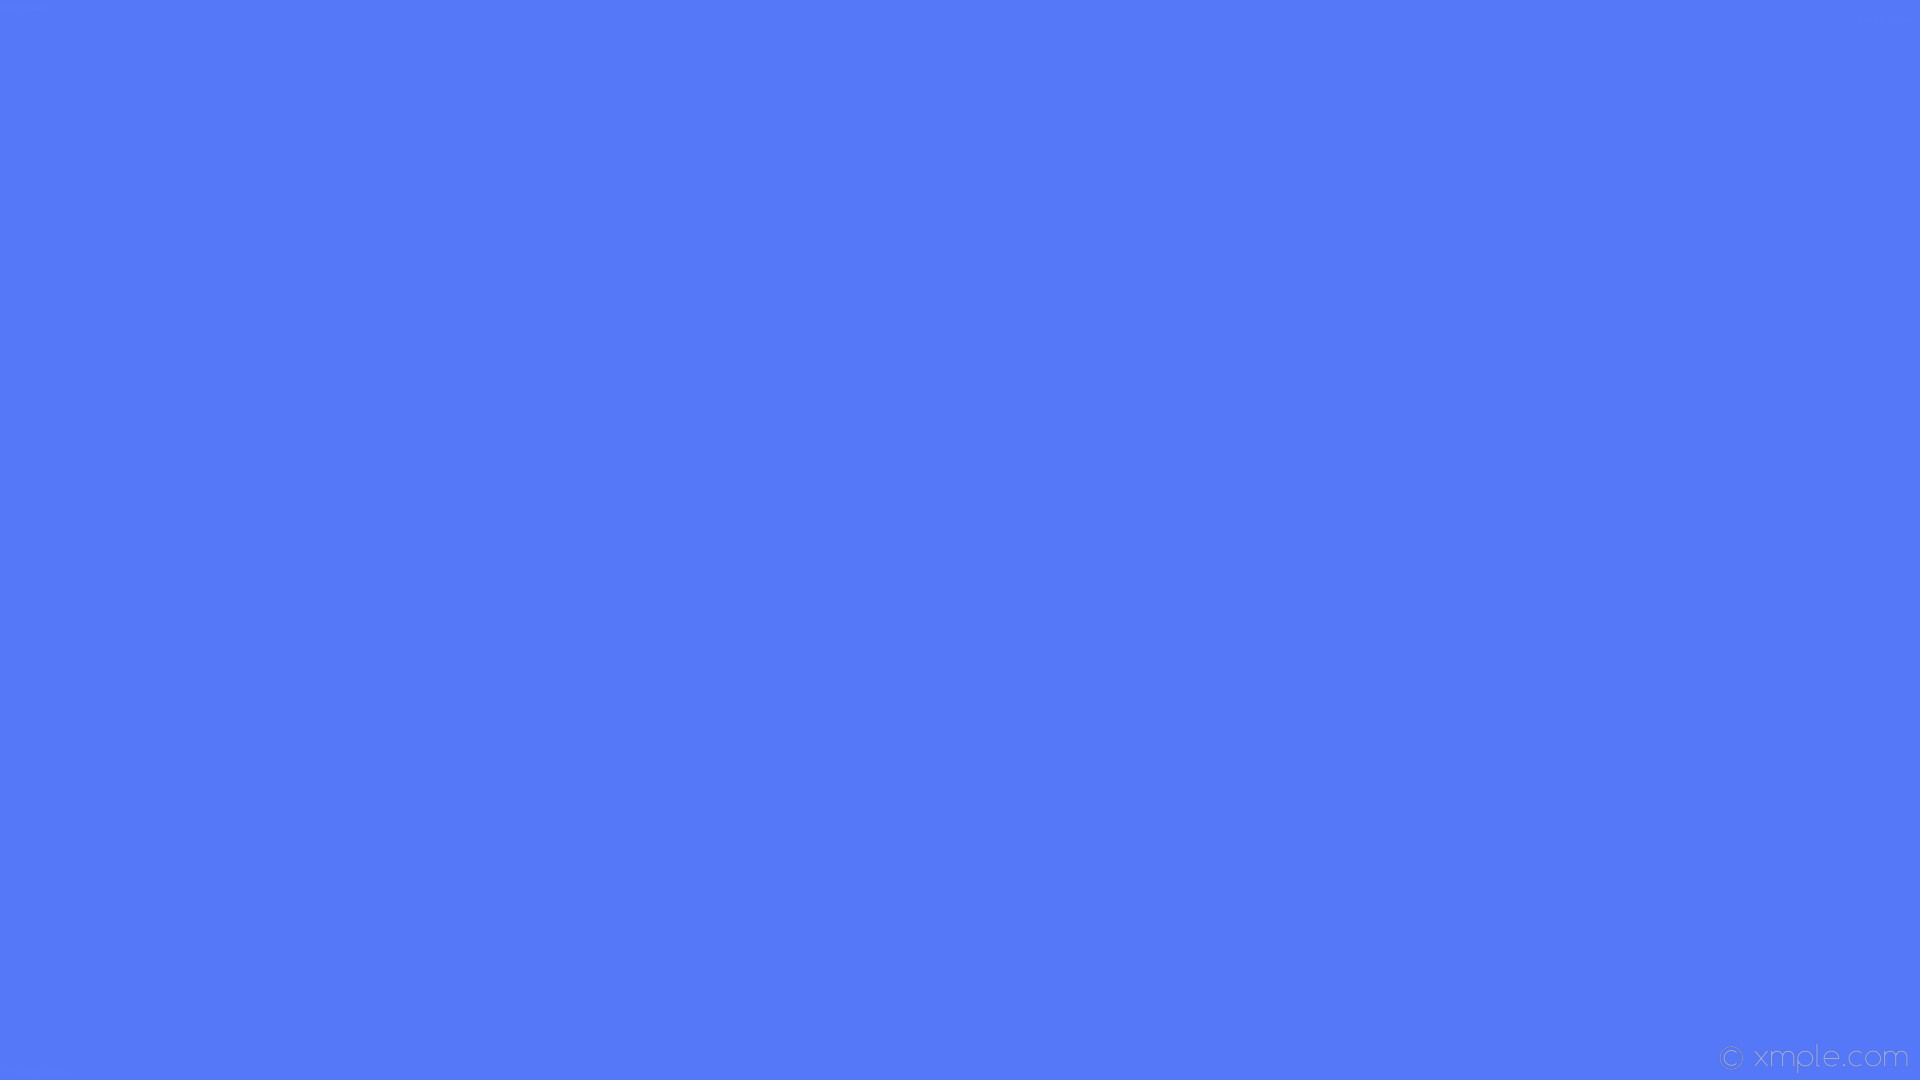 wallpaper one colour blue single solid color plain dark blue 02052a